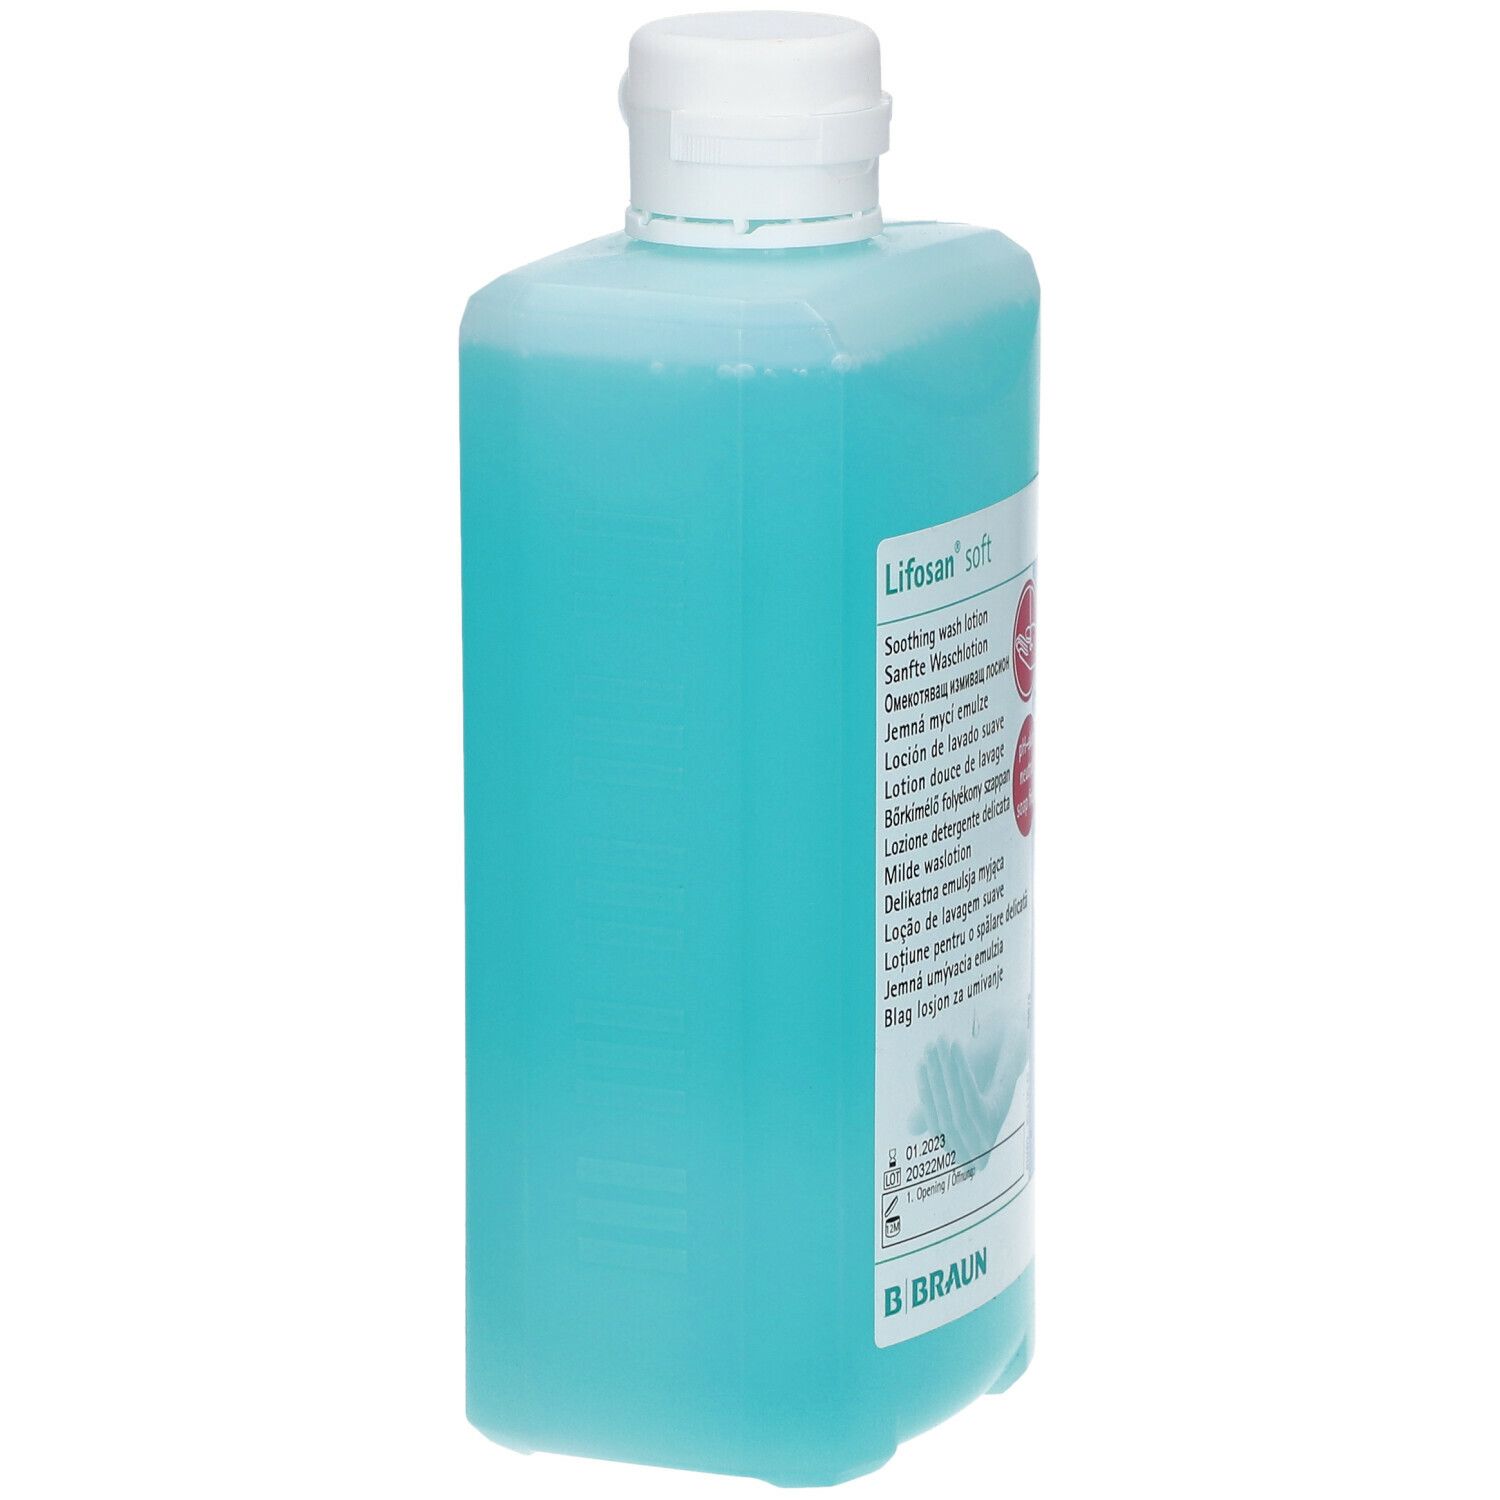 Lifosan® soft Spenderflasche